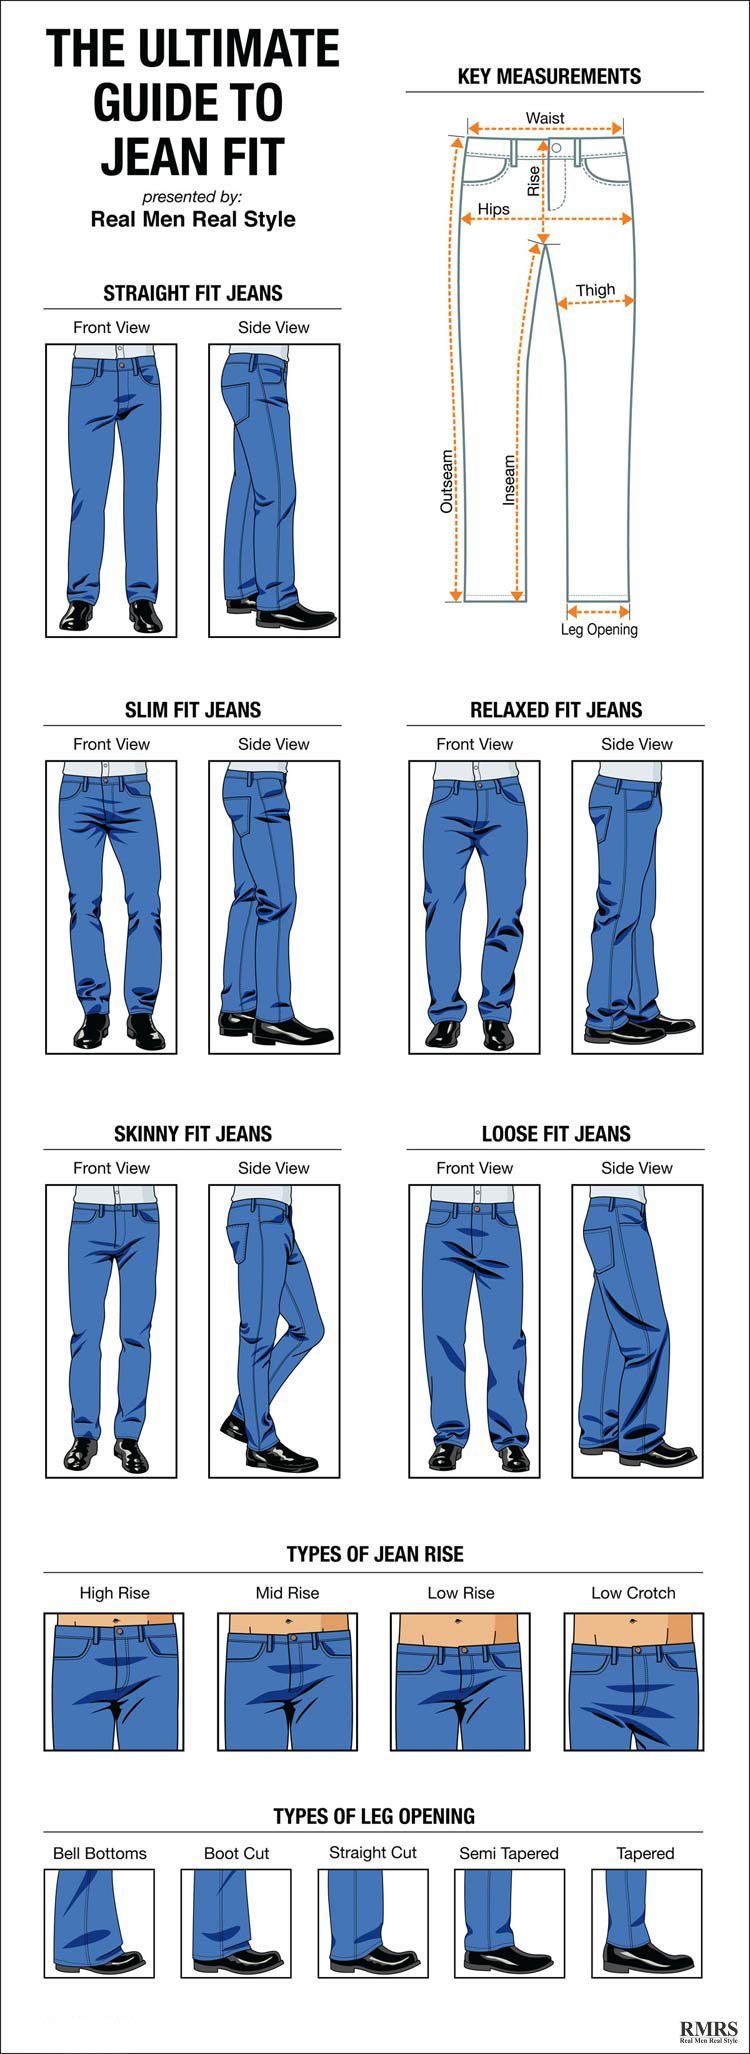 Como o jeans deve caber - Guia do homem para opções de estilo Jean - NOVO infográfico